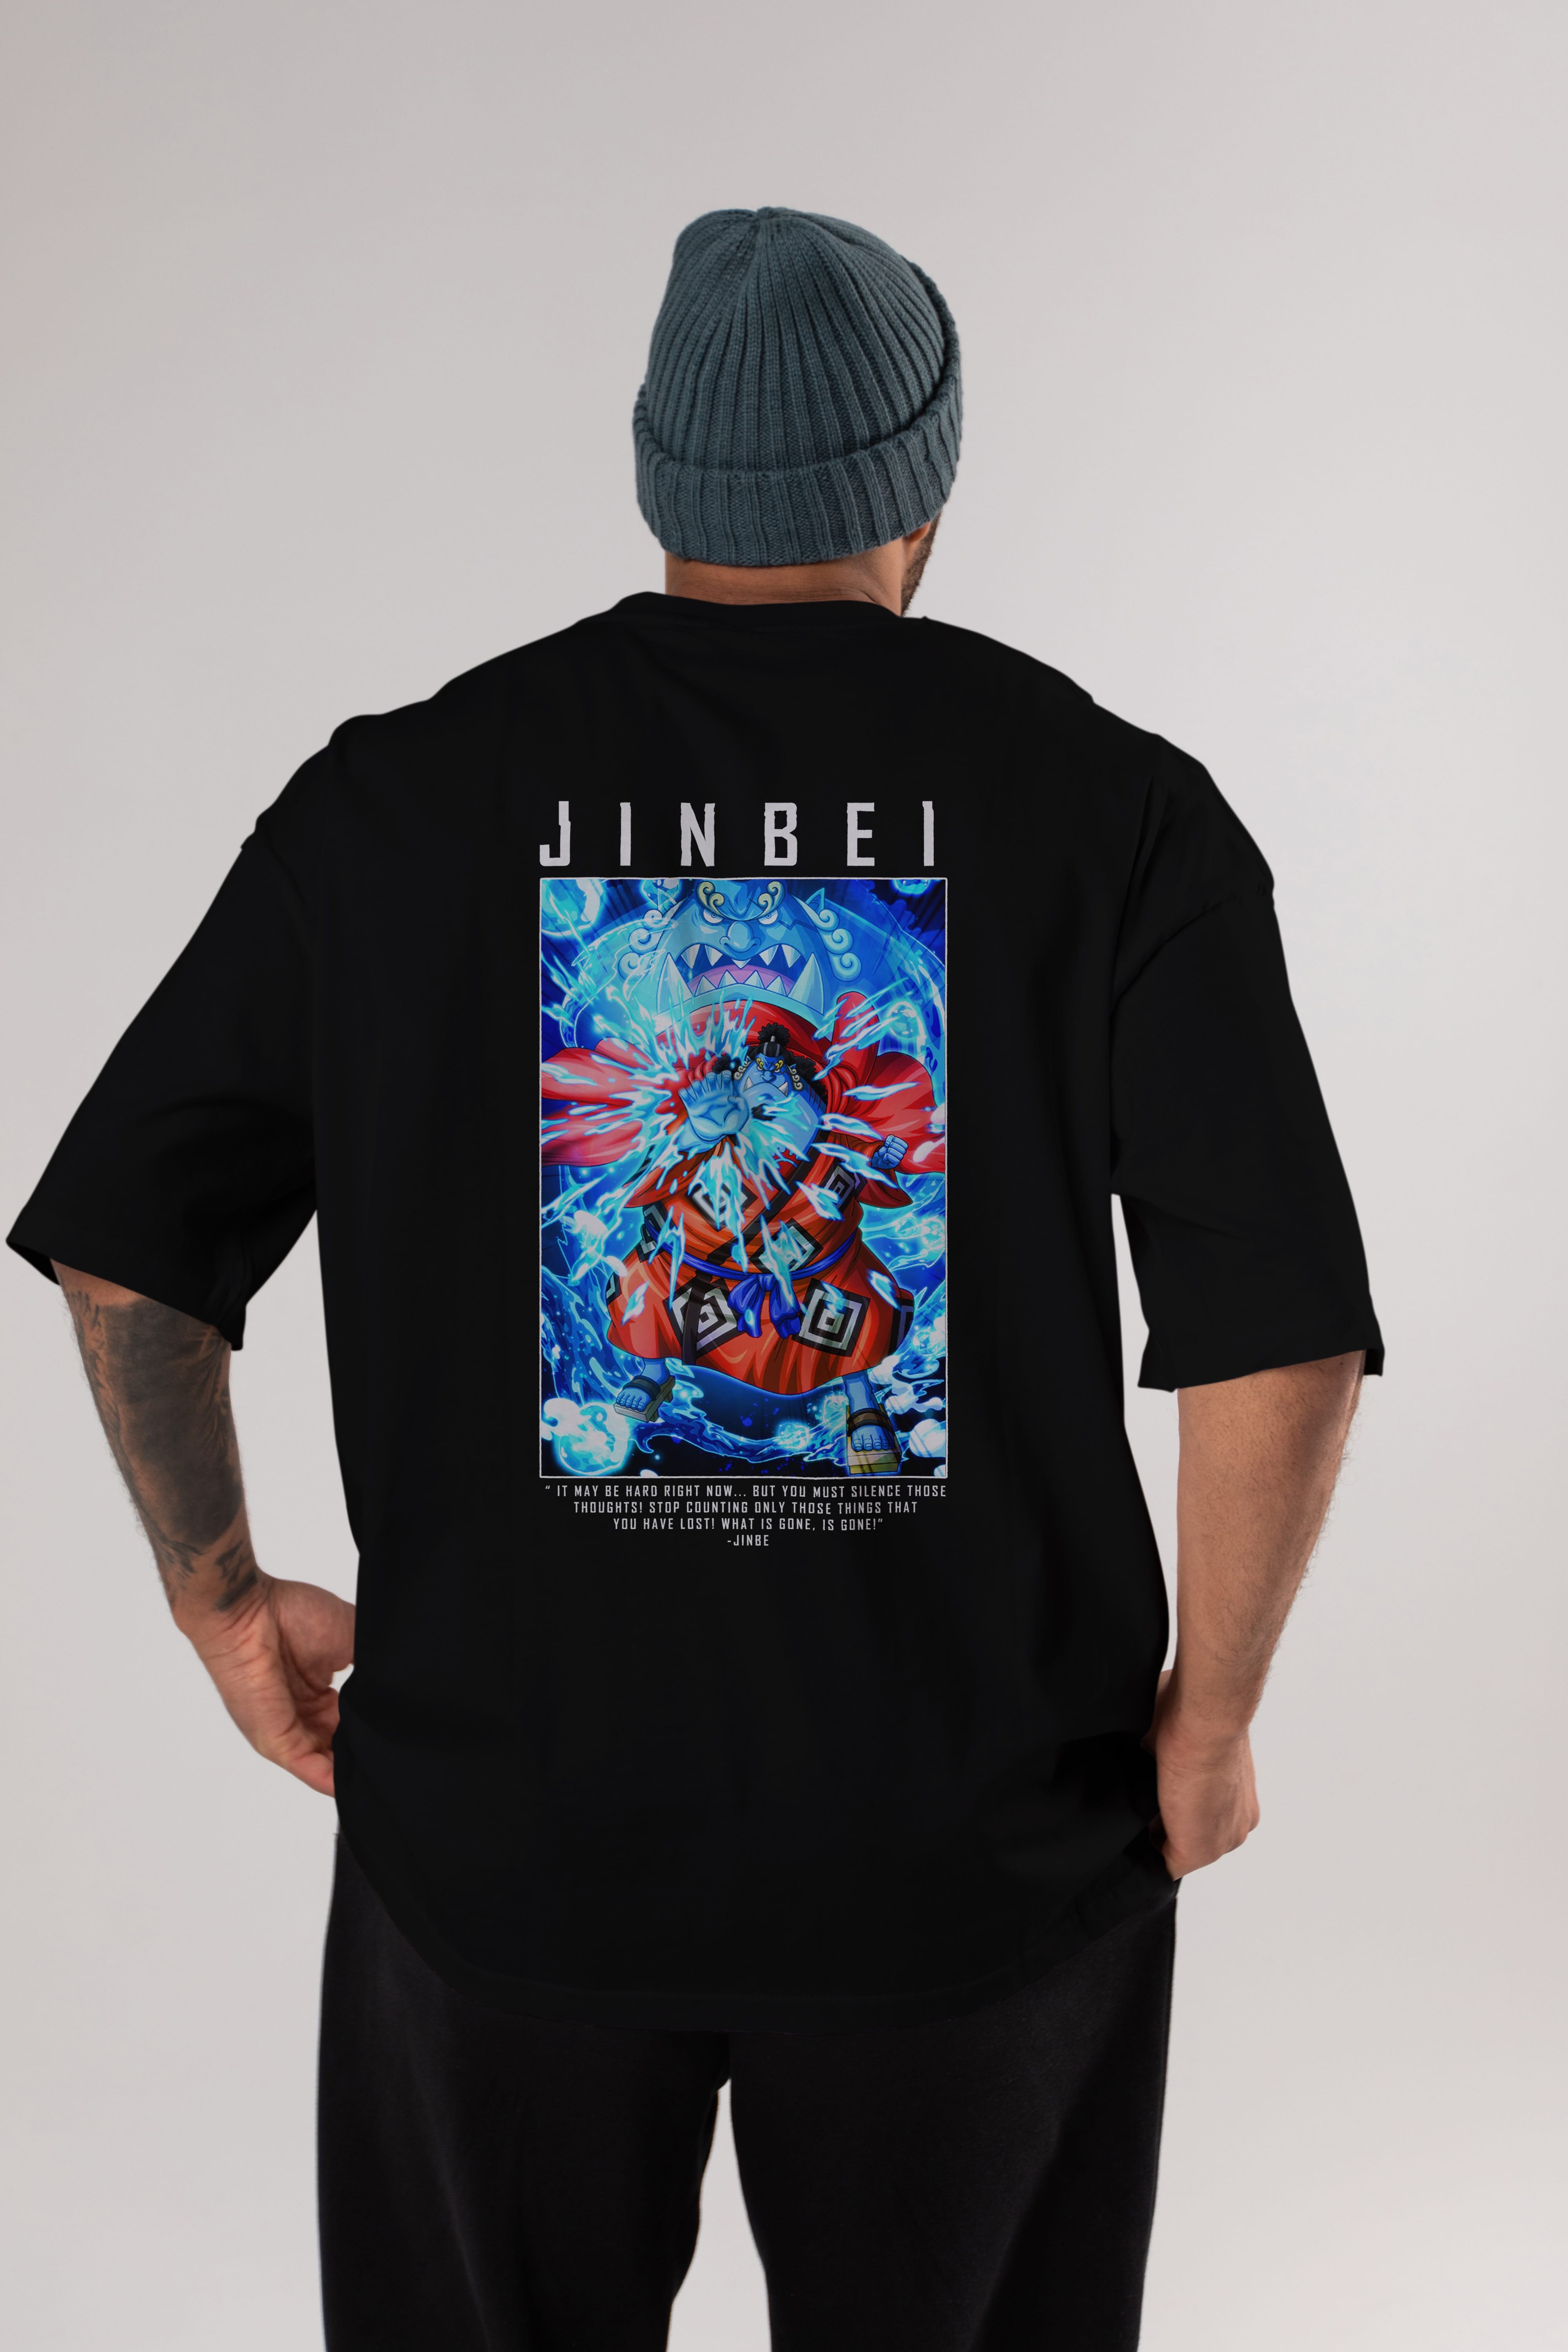 Jinbei Anime Arka Baskılı Oversize t-shirt Erkek Kadın Unisex %100 pamuk tişort